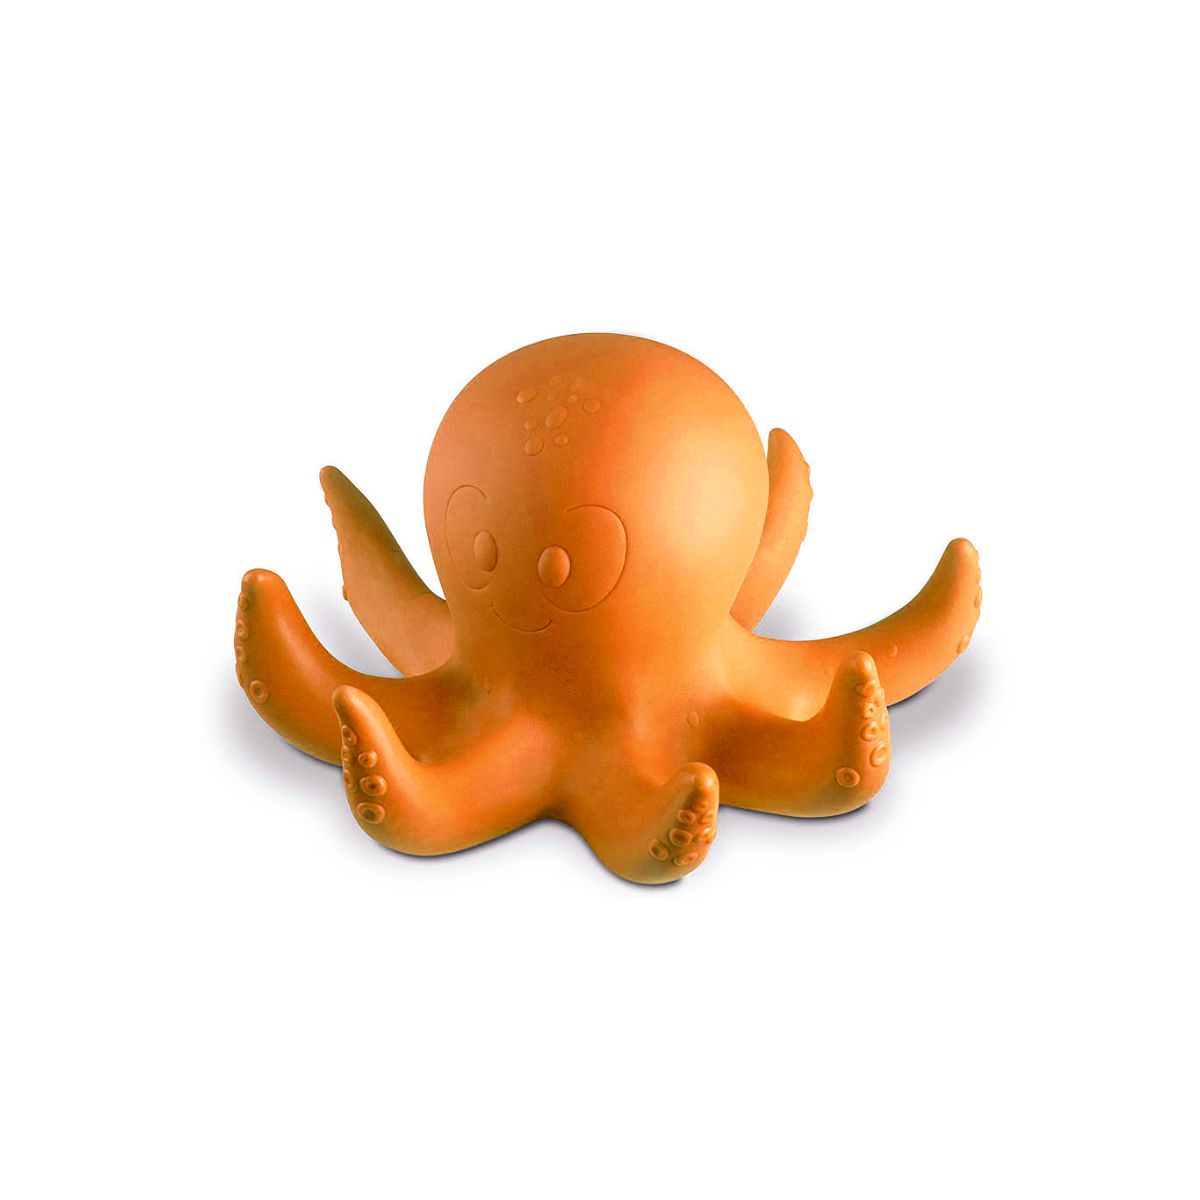 Preços baixos em Octopus Fantasias para Bebês e Crianças Pequenas